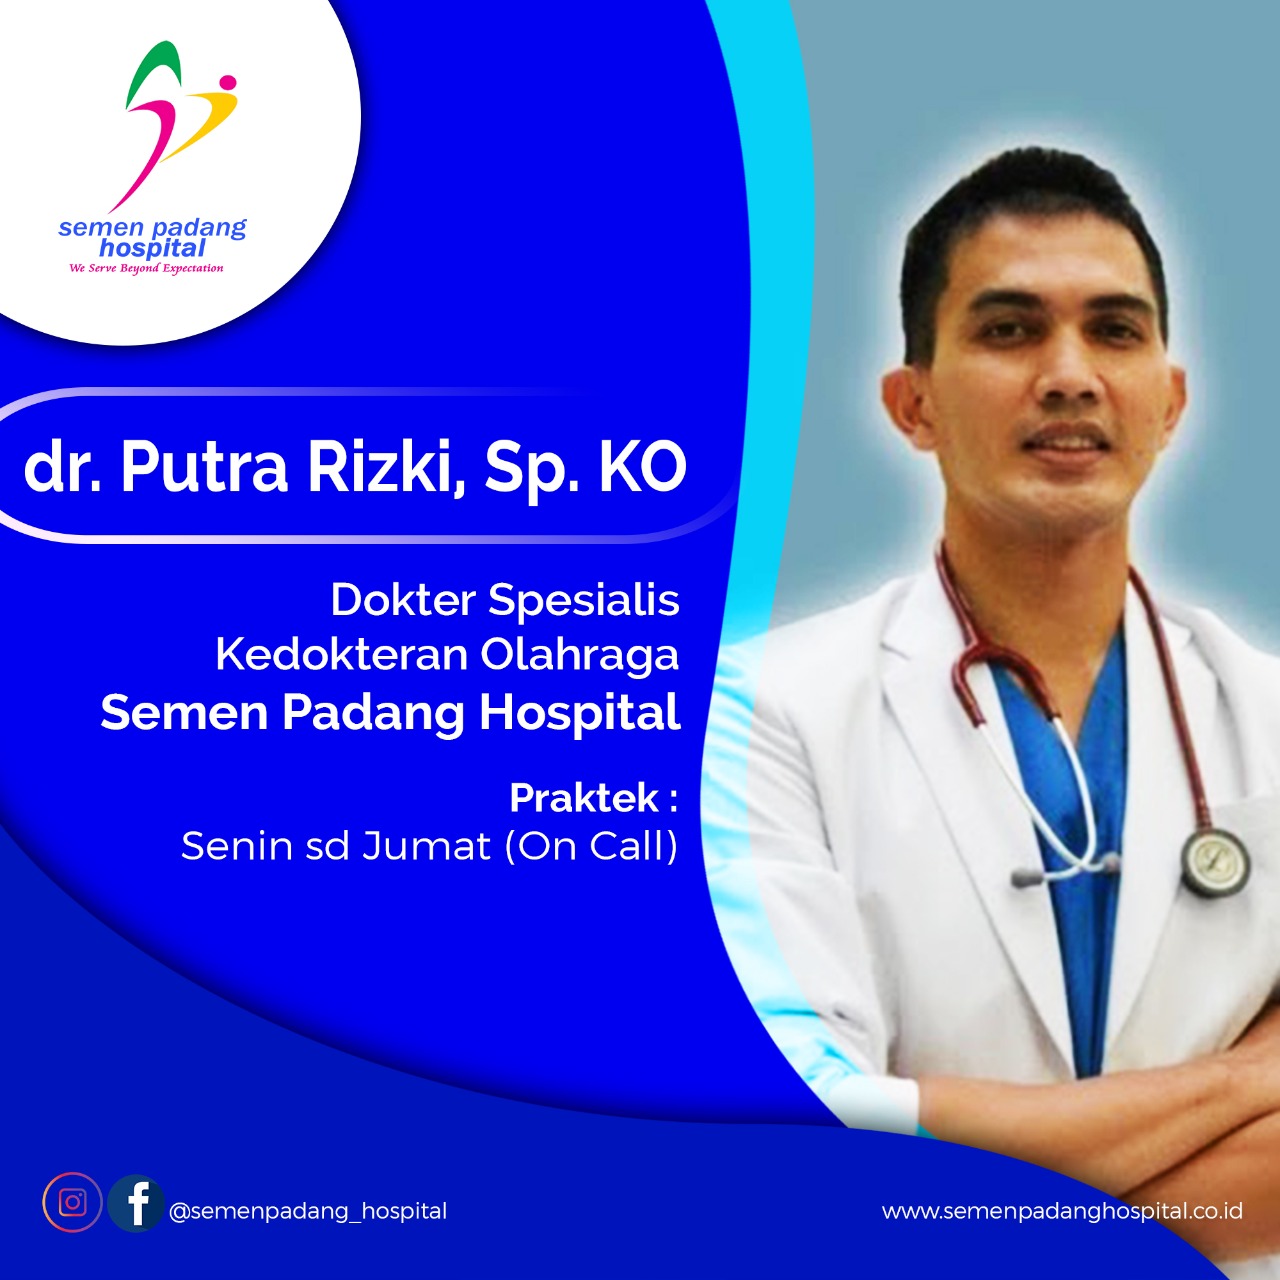 dr. Putra Rizki, Sp. KO. Dokter Spesialis Kedokteran Olahraga Semen Padang Hospital